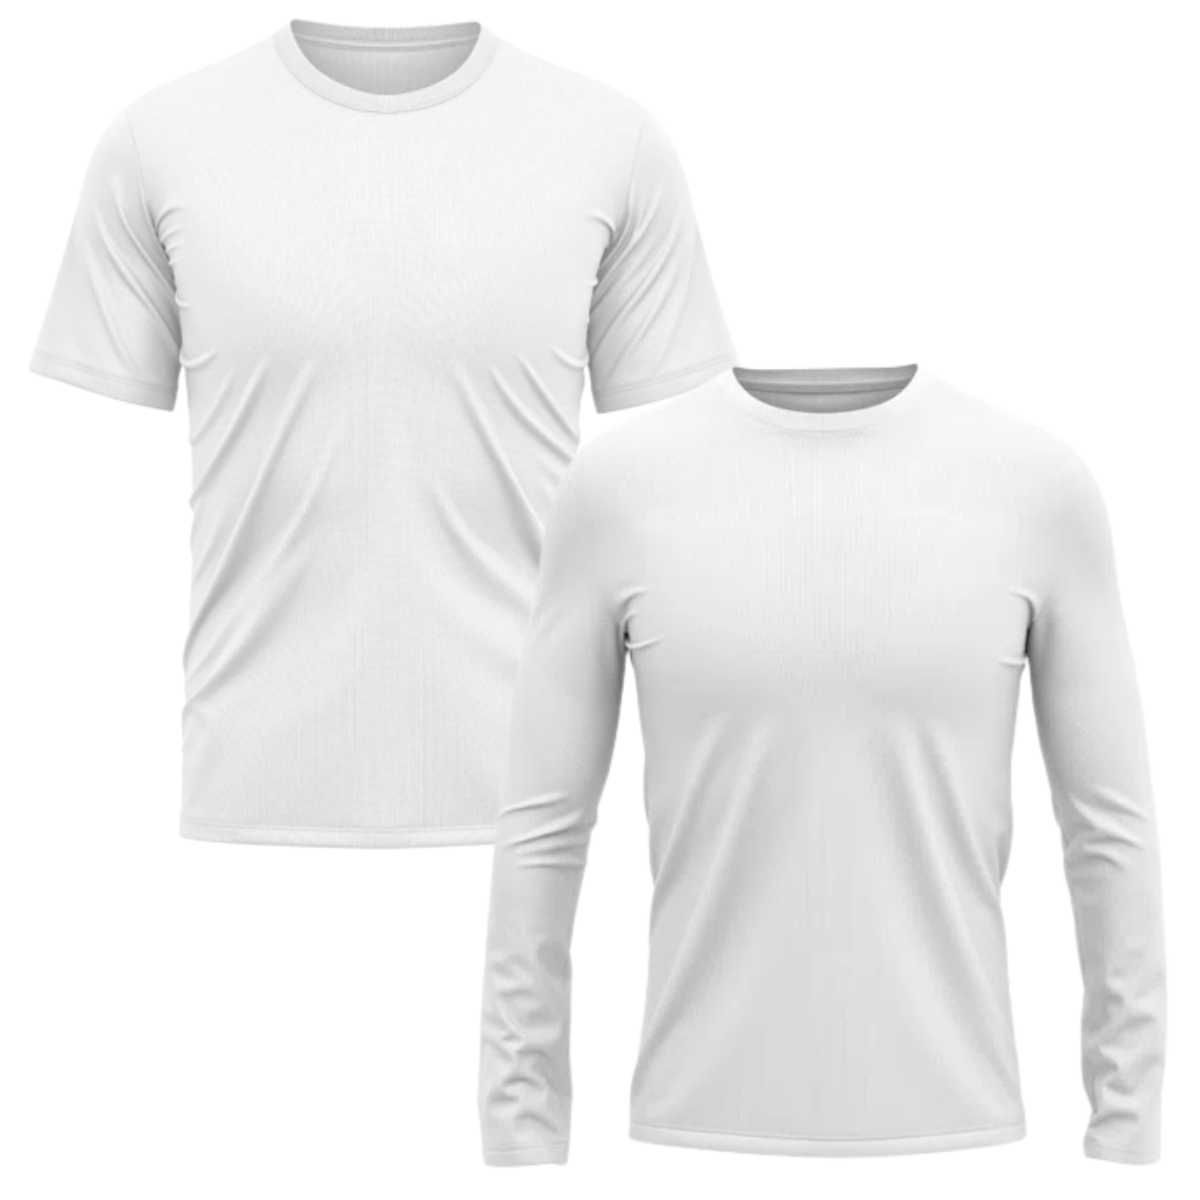 kit 2 camisa de proteção UV manga curta e manga longa branca